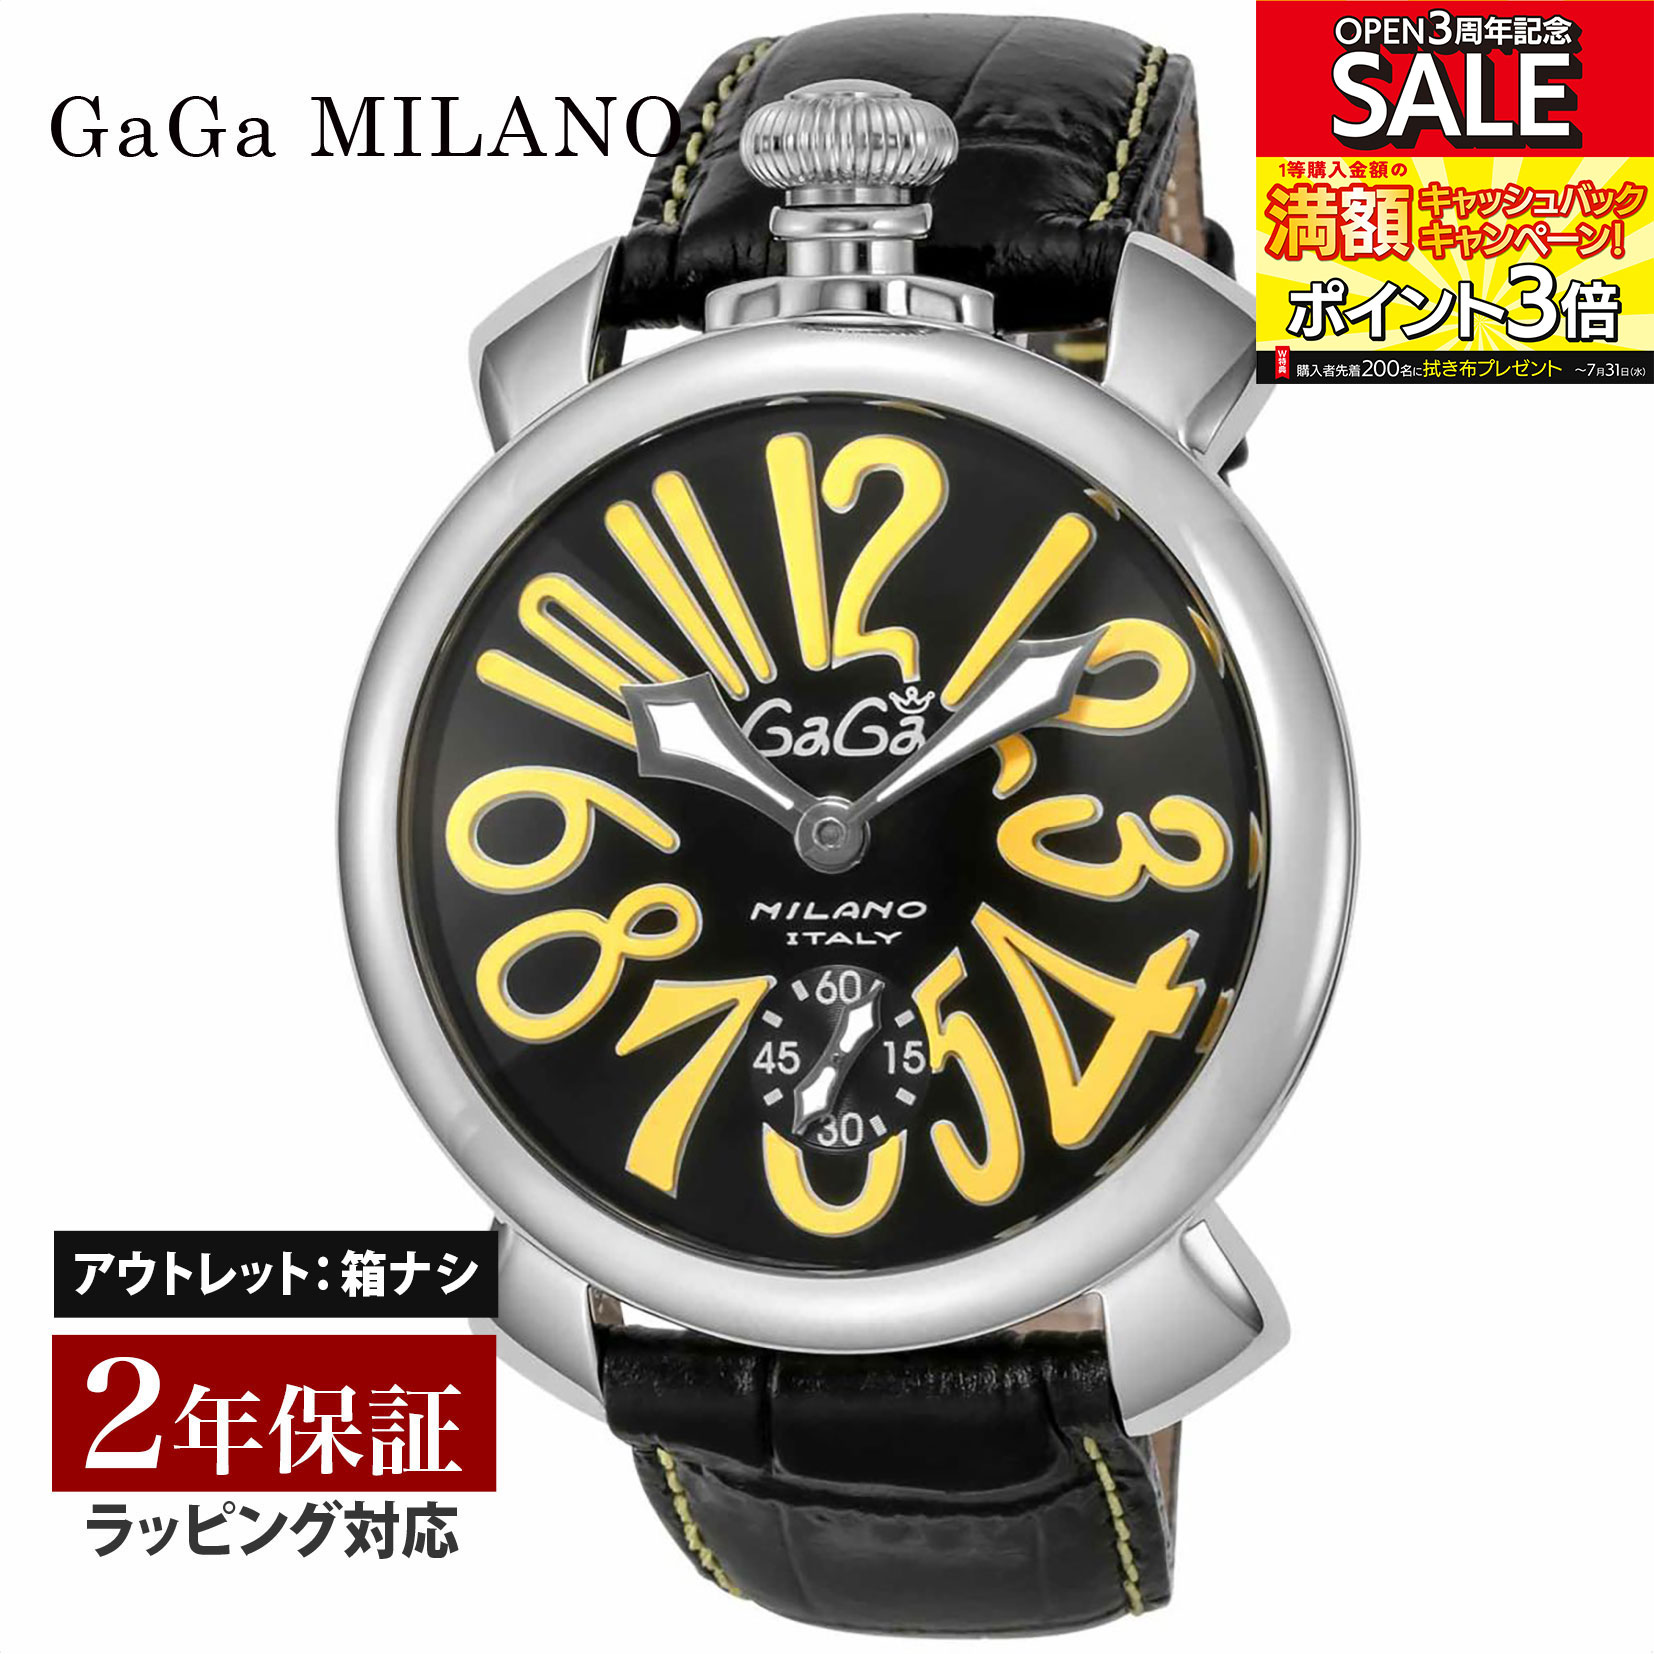 【クリアランスSALE】 GaGaMILAN ガガミラノ MANUALE 48MM 手巻き メンズ ブラック 5010.12S-BLK 腕時計 高級腕時計 ブランド 